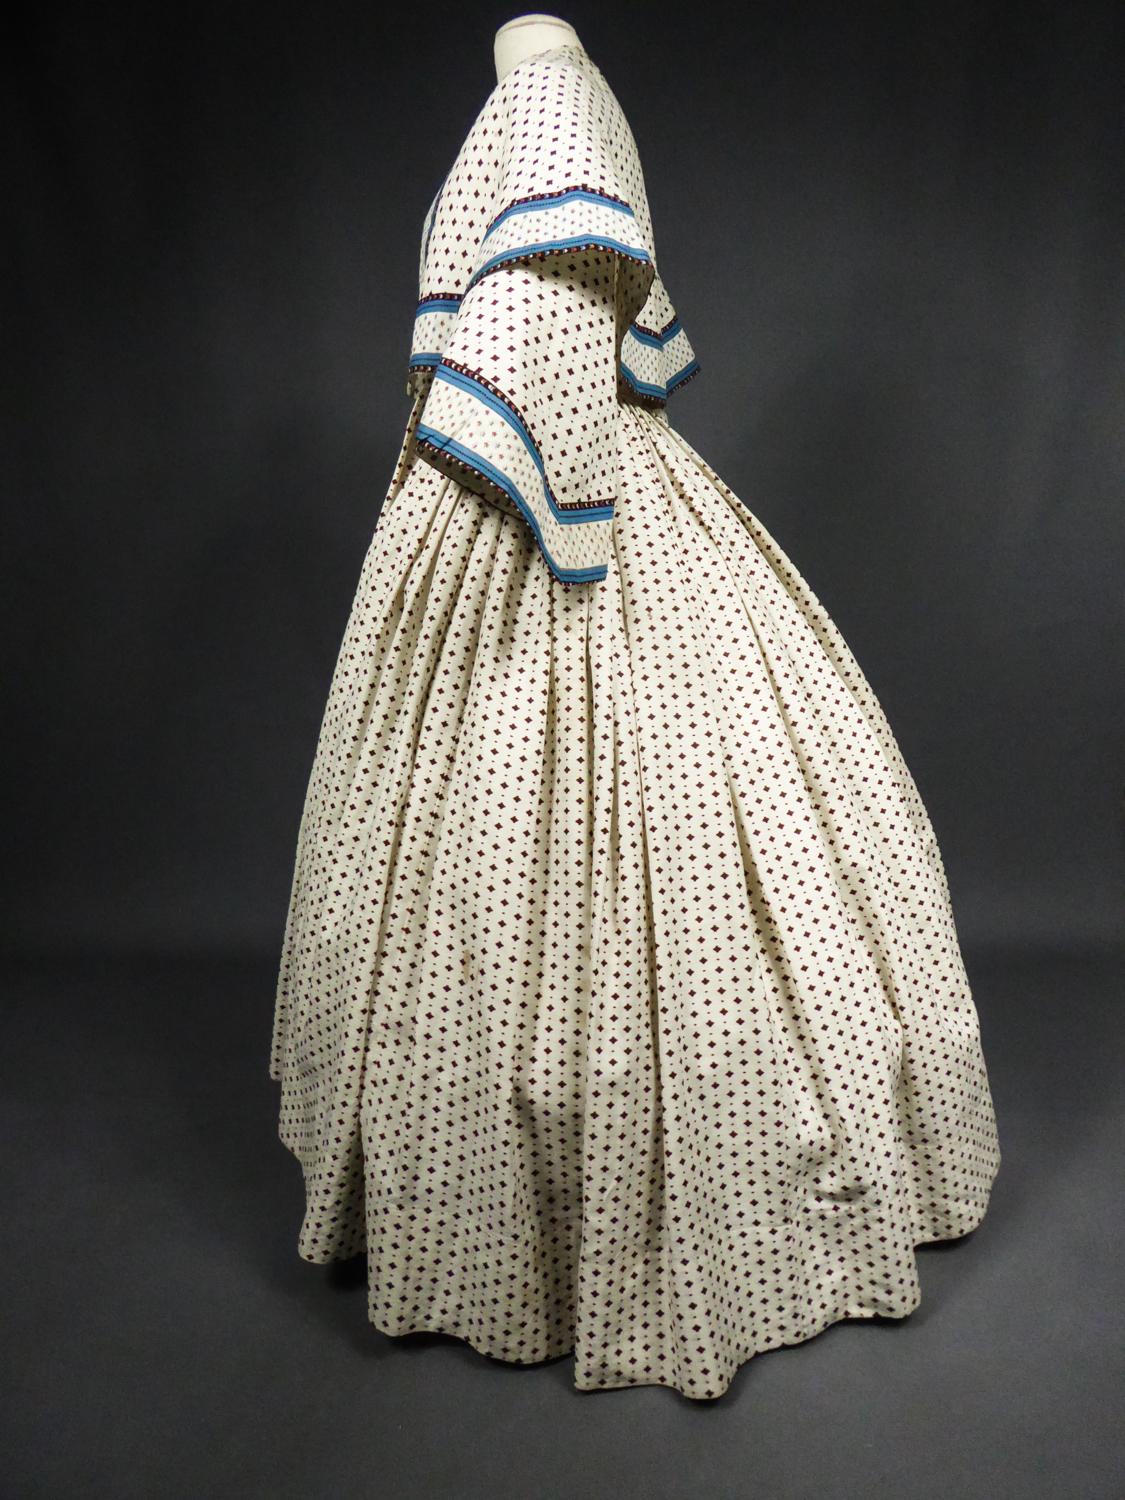 A Printed Cotton Crinoline Day Dress - France Napoleon III Period Circa 1865 1